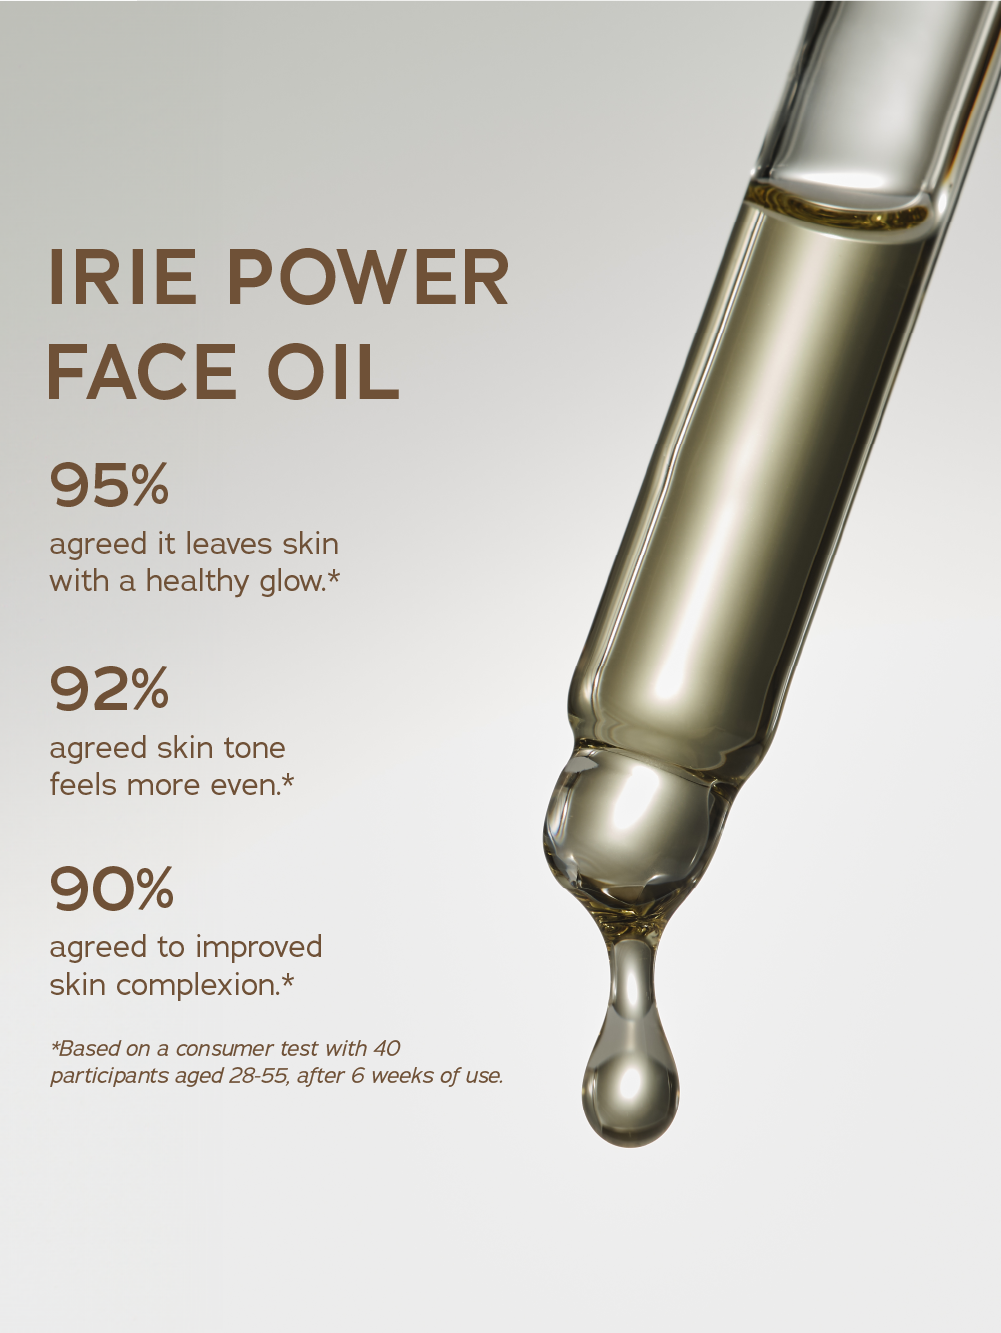 Irie Power Face Oil